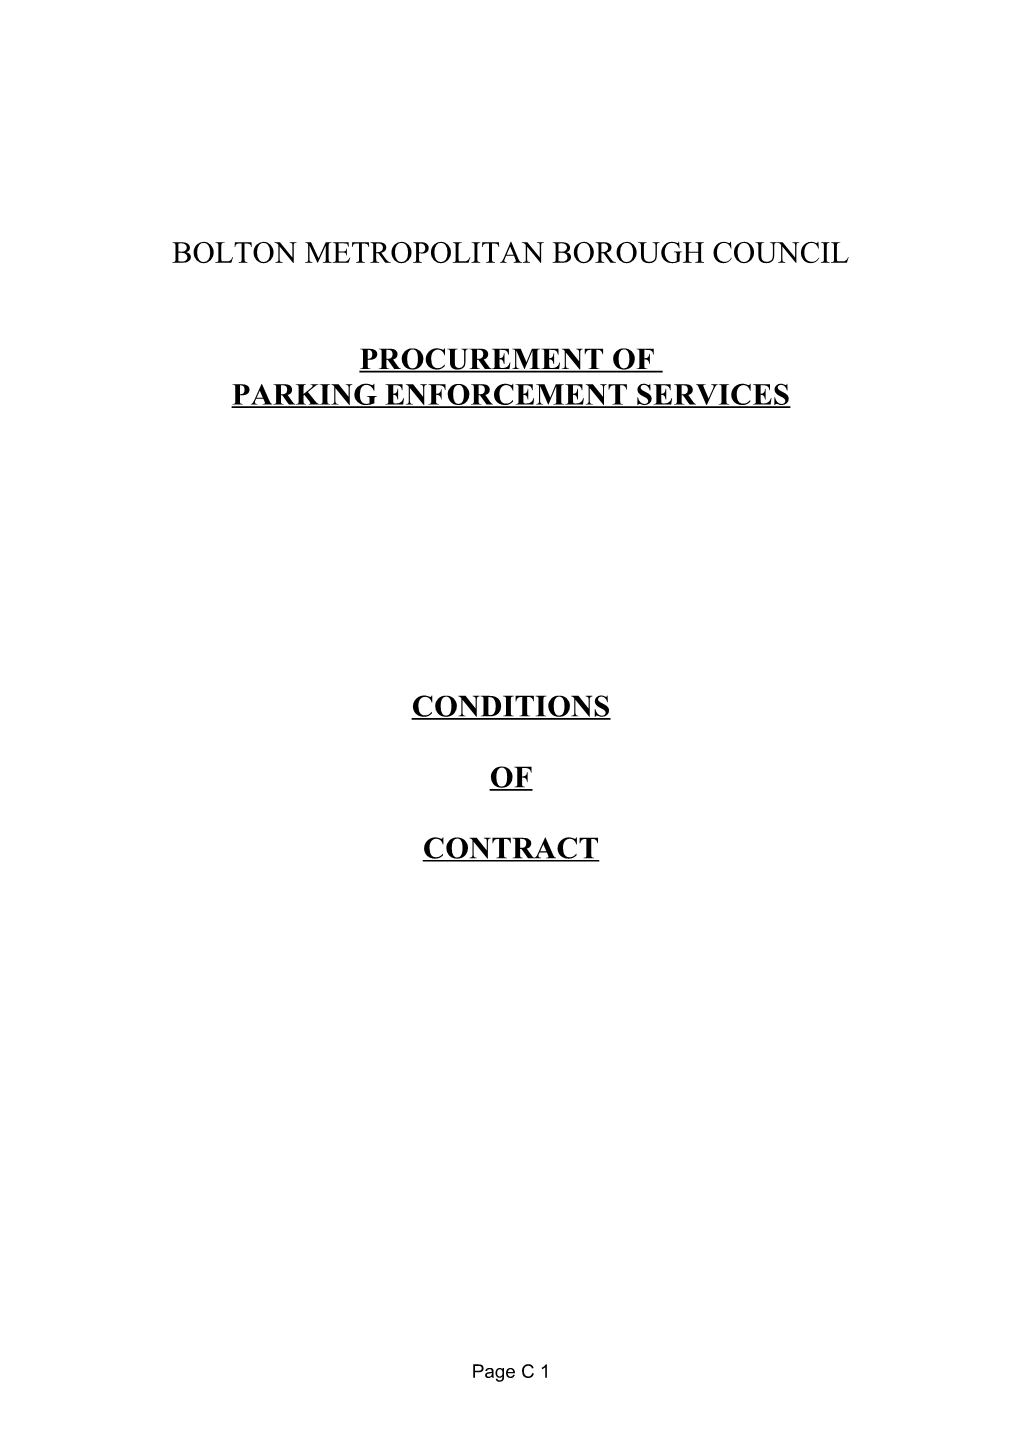 Parking Enforcement Contract - Cambridge City